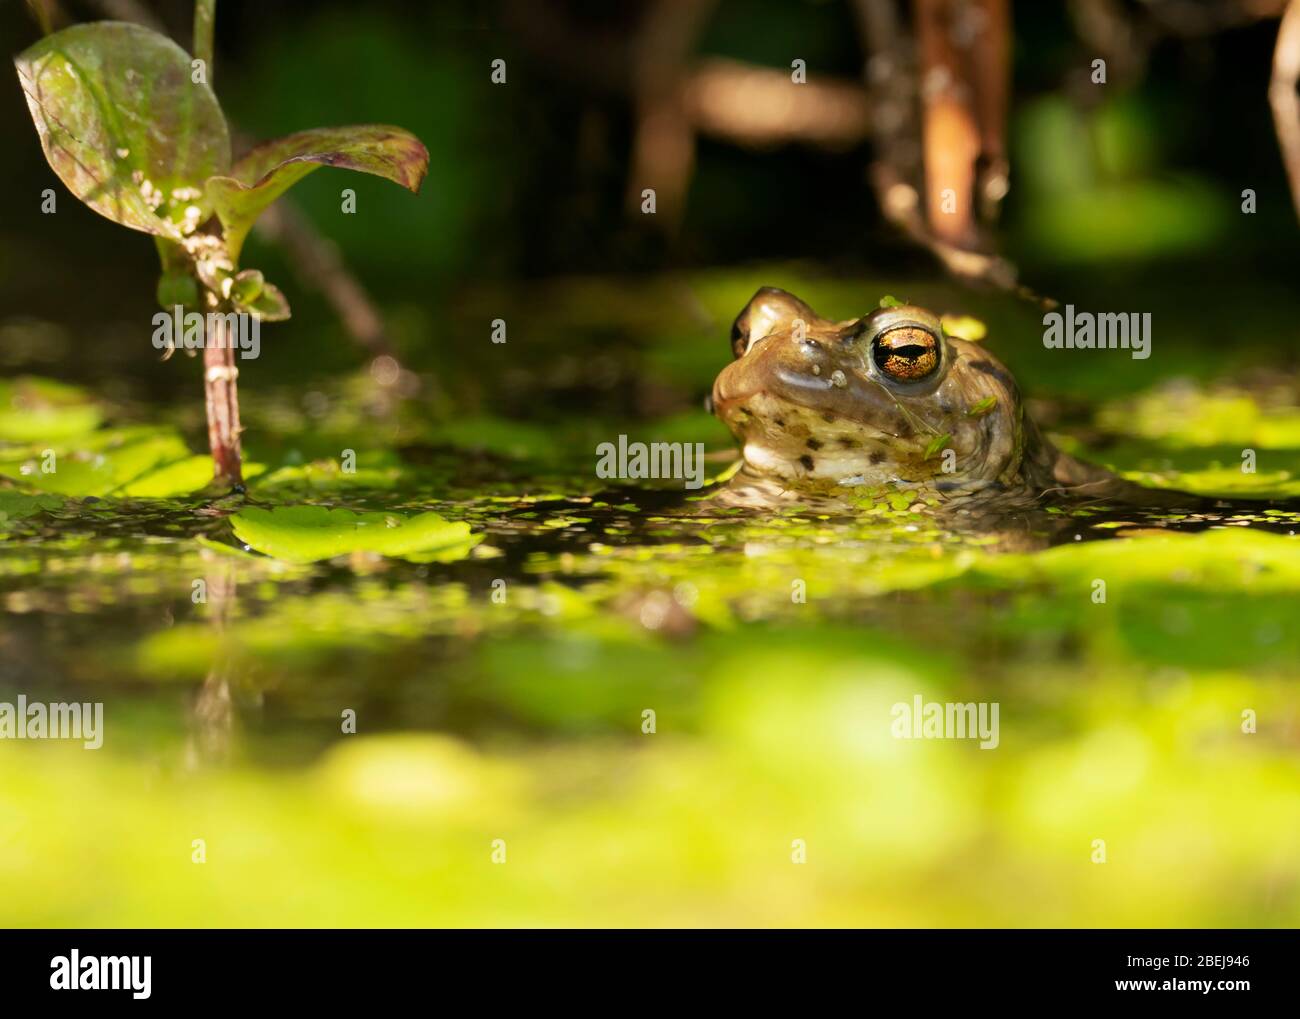 Una rana común (Rana temporaria) se encuentra sumergida a la mitad en un estanque de jardín de Warwickshire Foto de stock